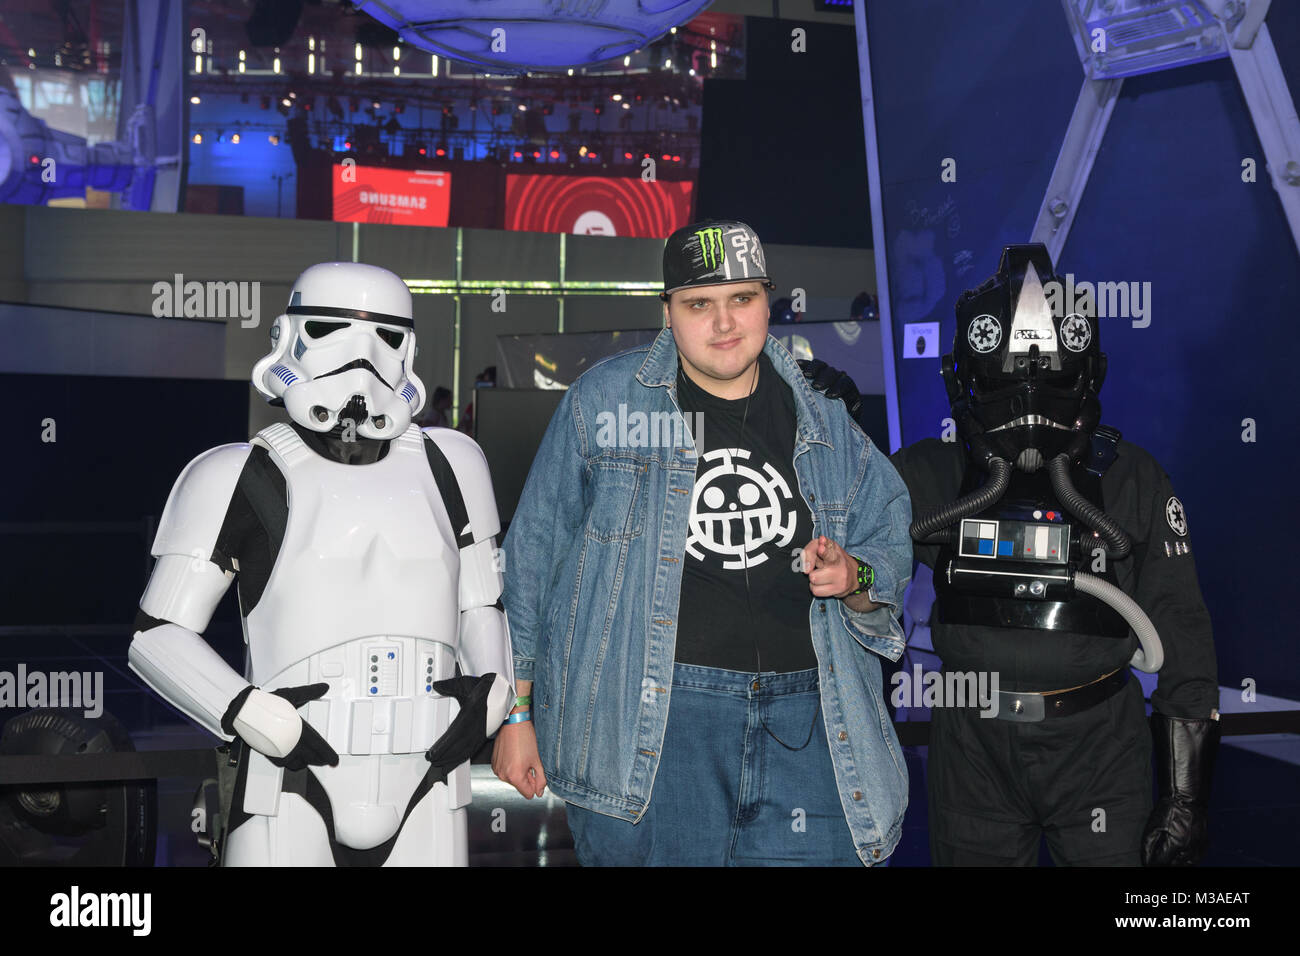 Colonia, Germania - 24 agosto 2017: un giocatore in posa con due star wars attori per il gioco di star wars battlefront ii della società EA in occasione di gamescom 2017. Foto Stock